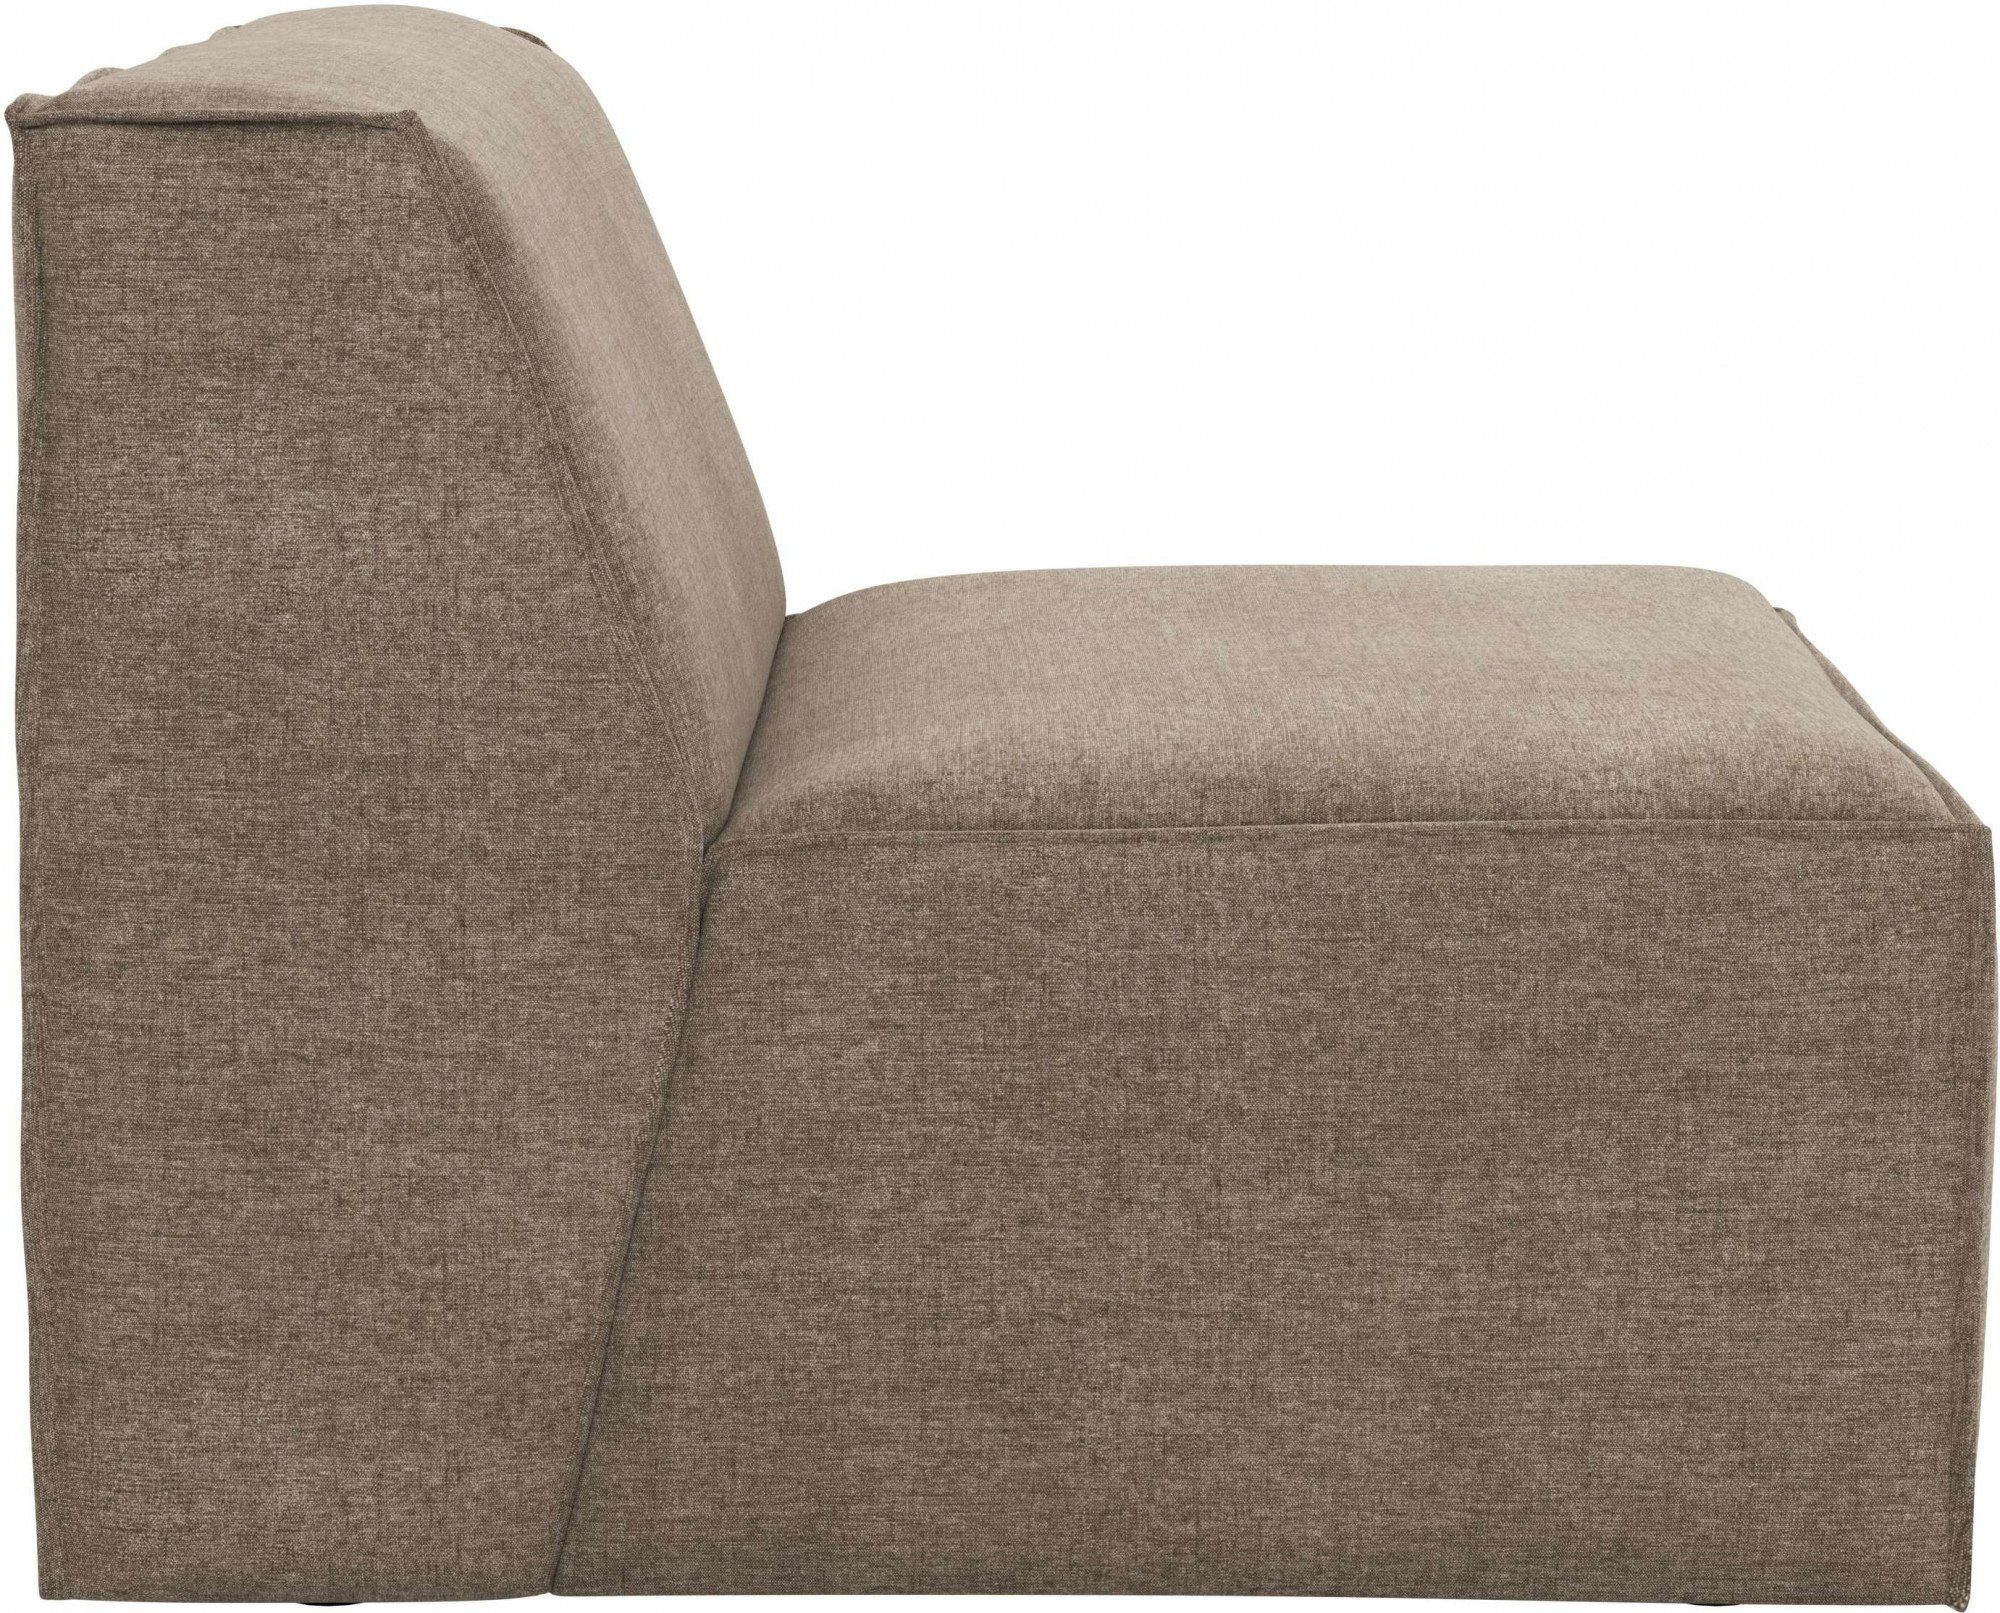 RAUM.ID Sofa-Mittelelement Norvid, mit Modulen und Auswahl taupe modular, Polsterung Komfortschaum, an große